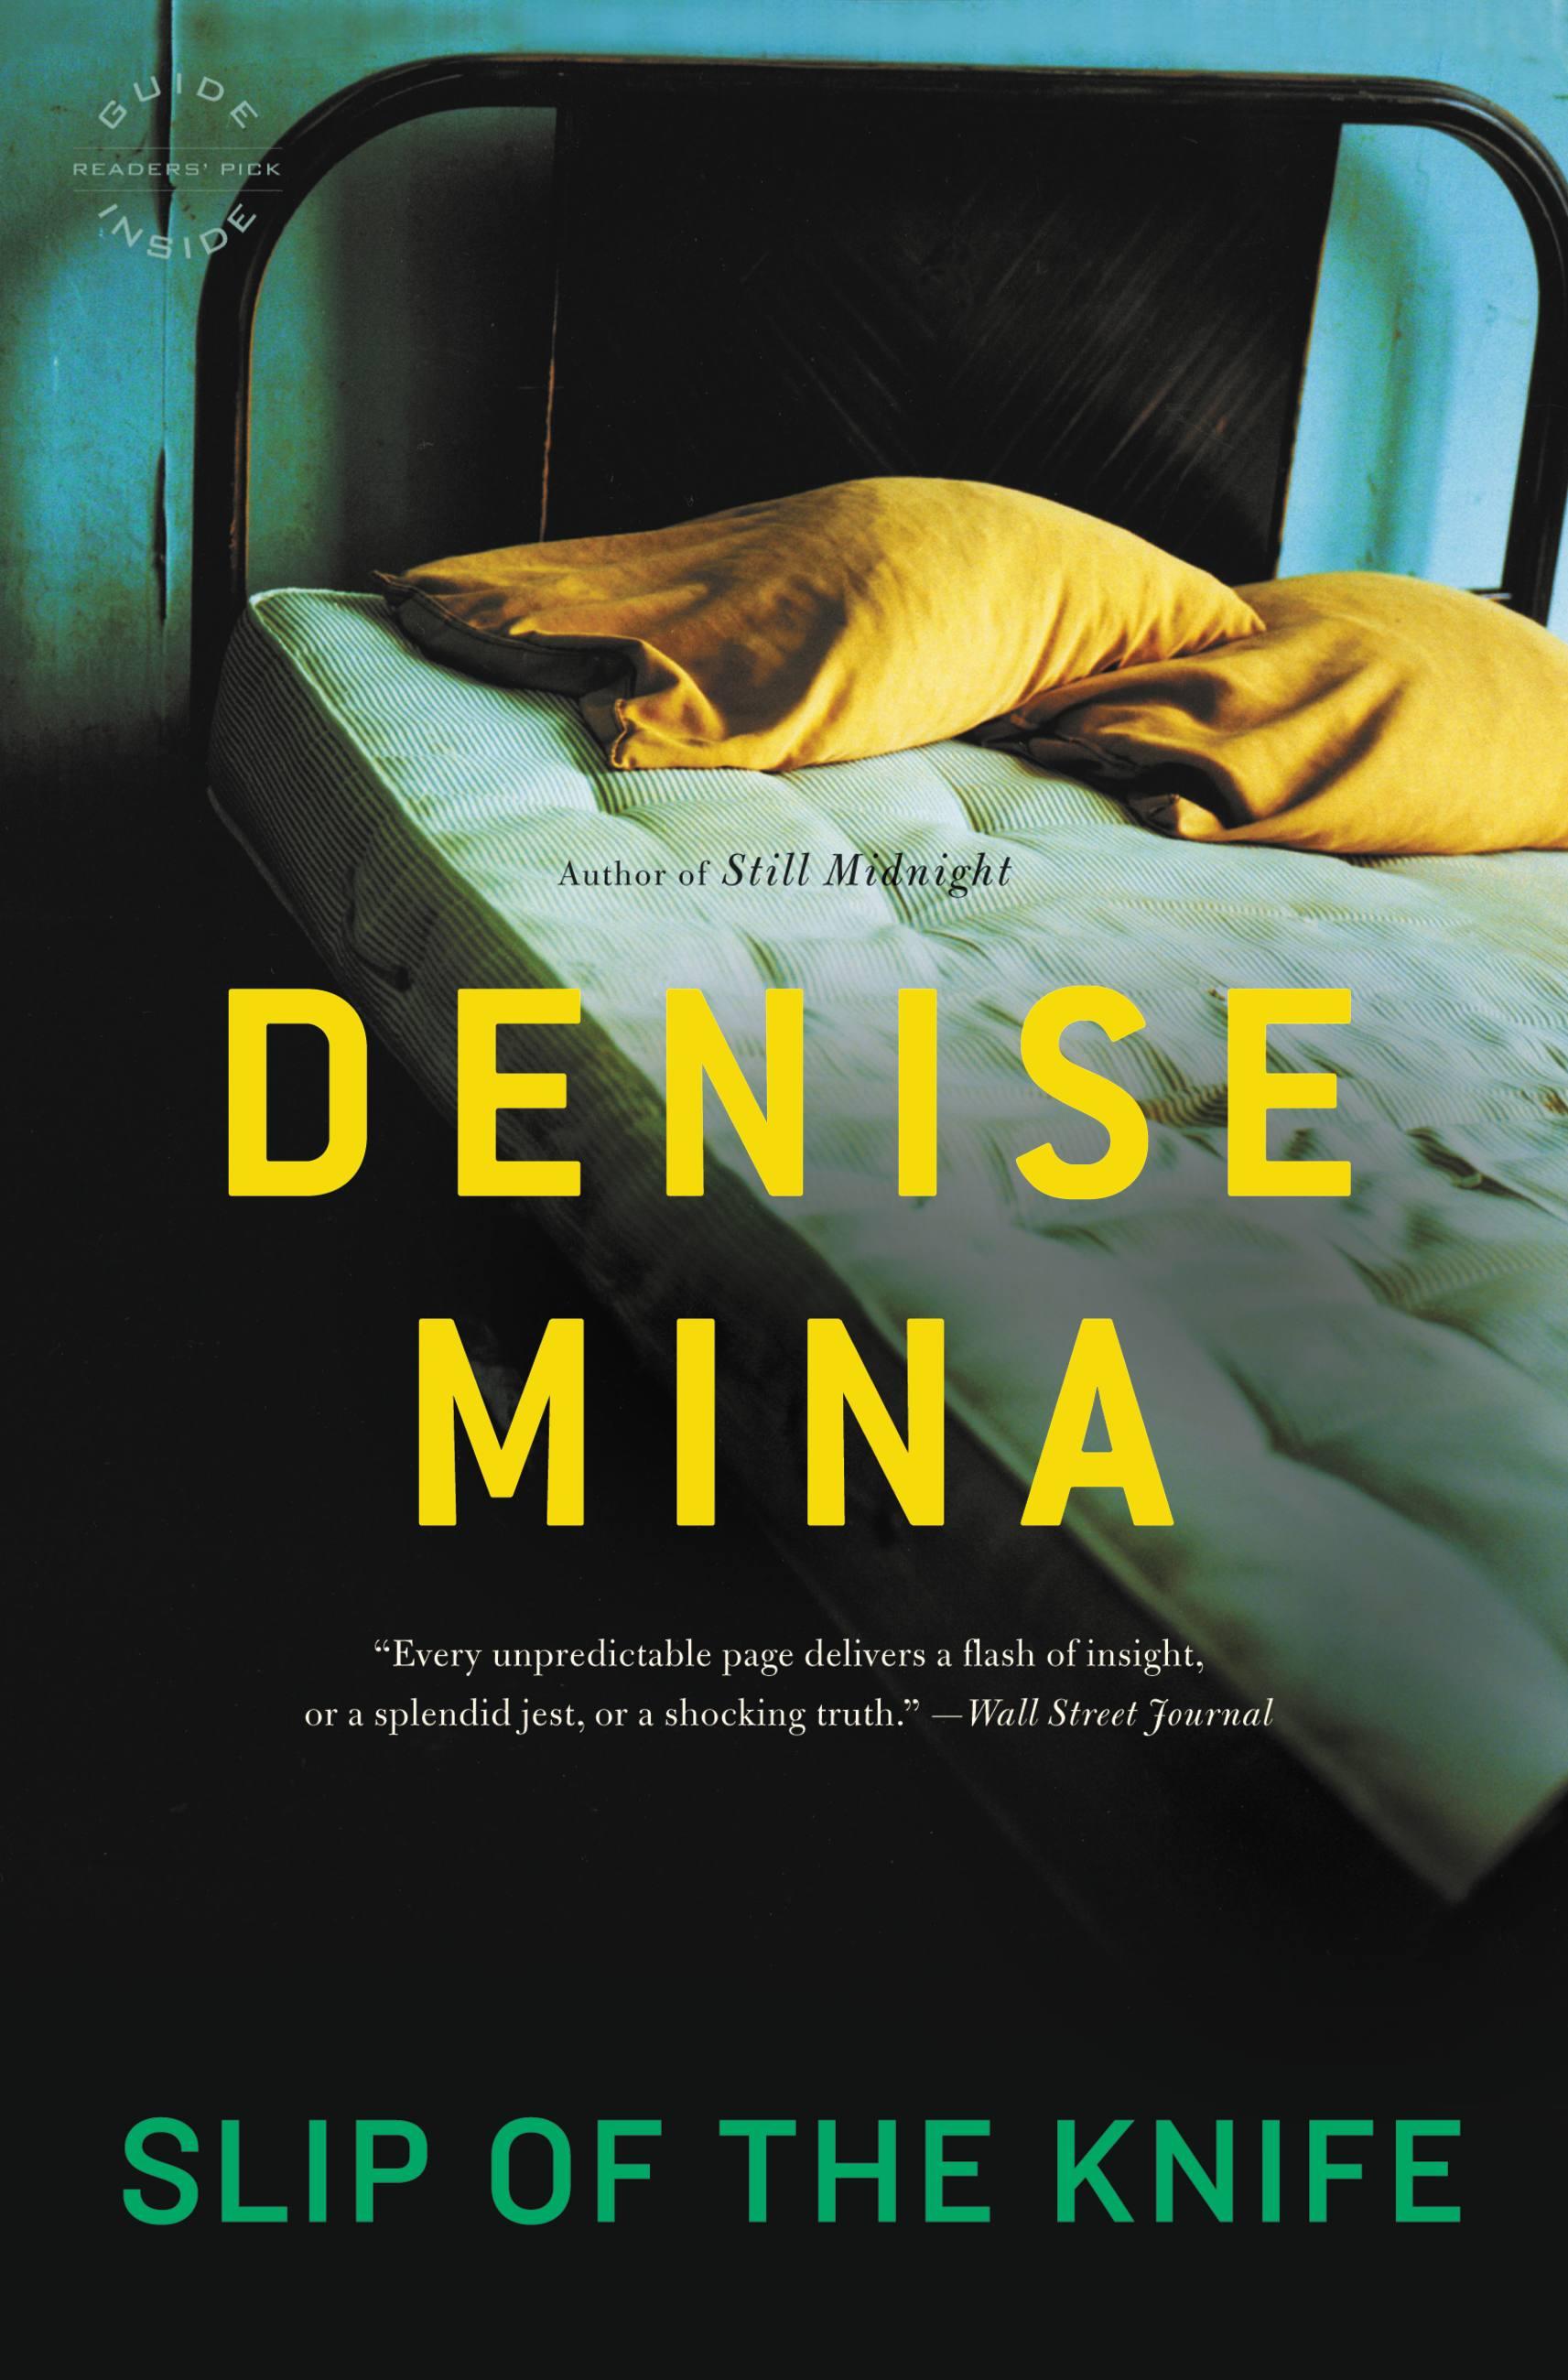 Slip of the Knife - Mina, Denise